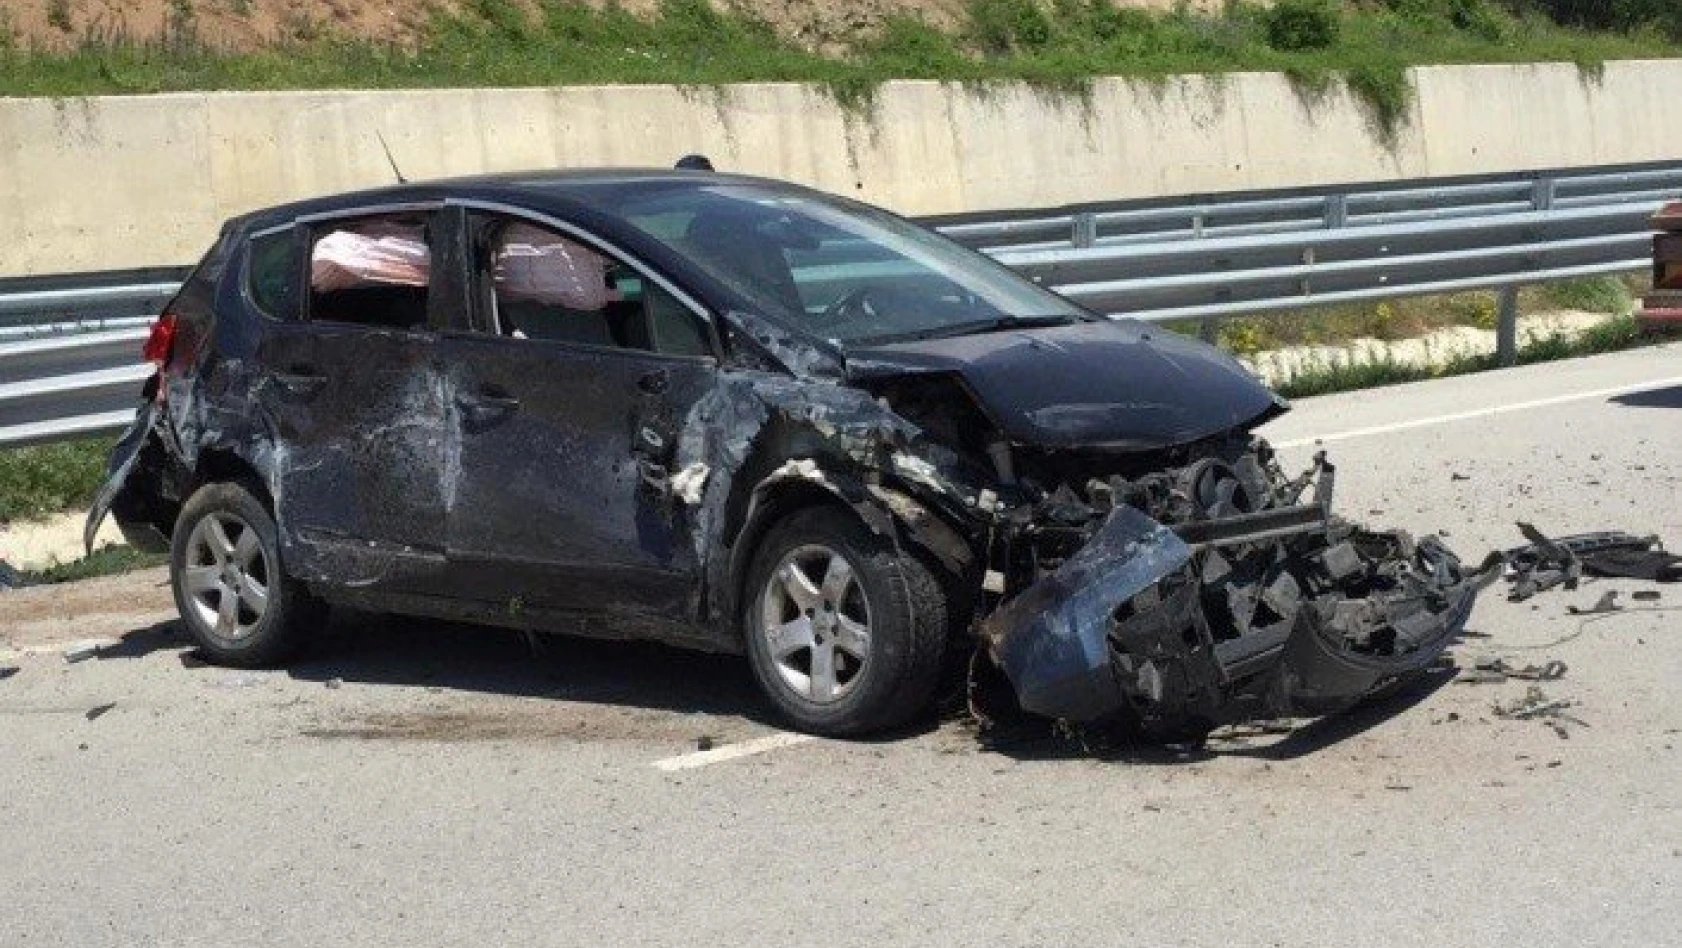 Kastamonu'da otomobil bariyerlere çaptı: 2 ölü, 3 yaralı